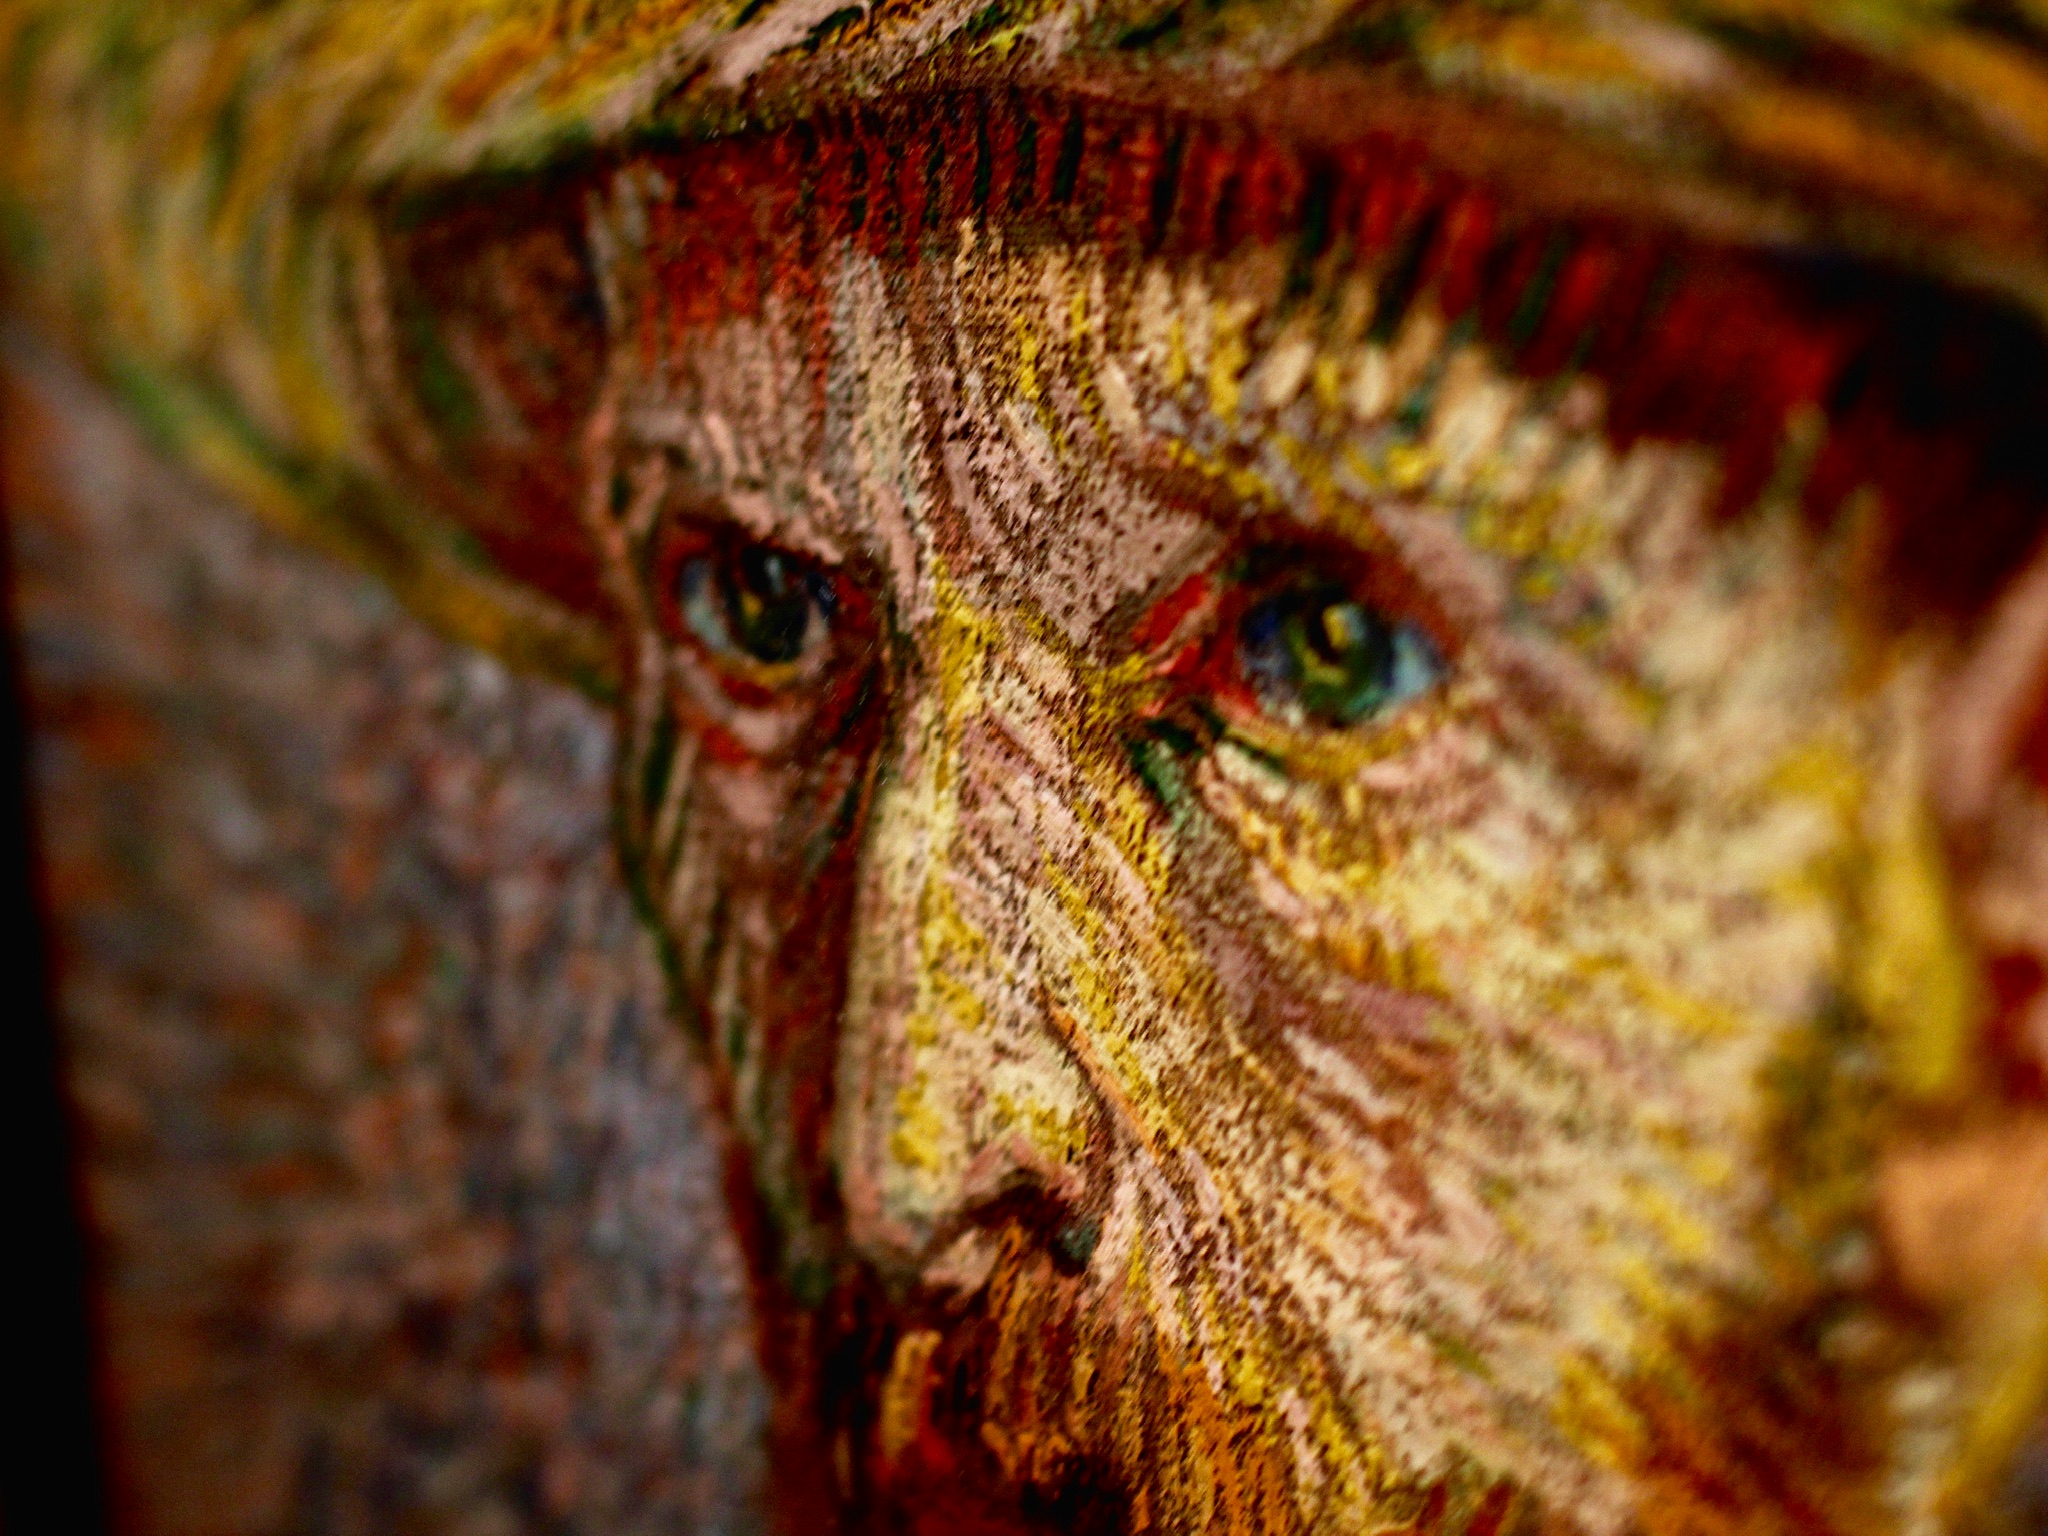 Van Gogh's eyes